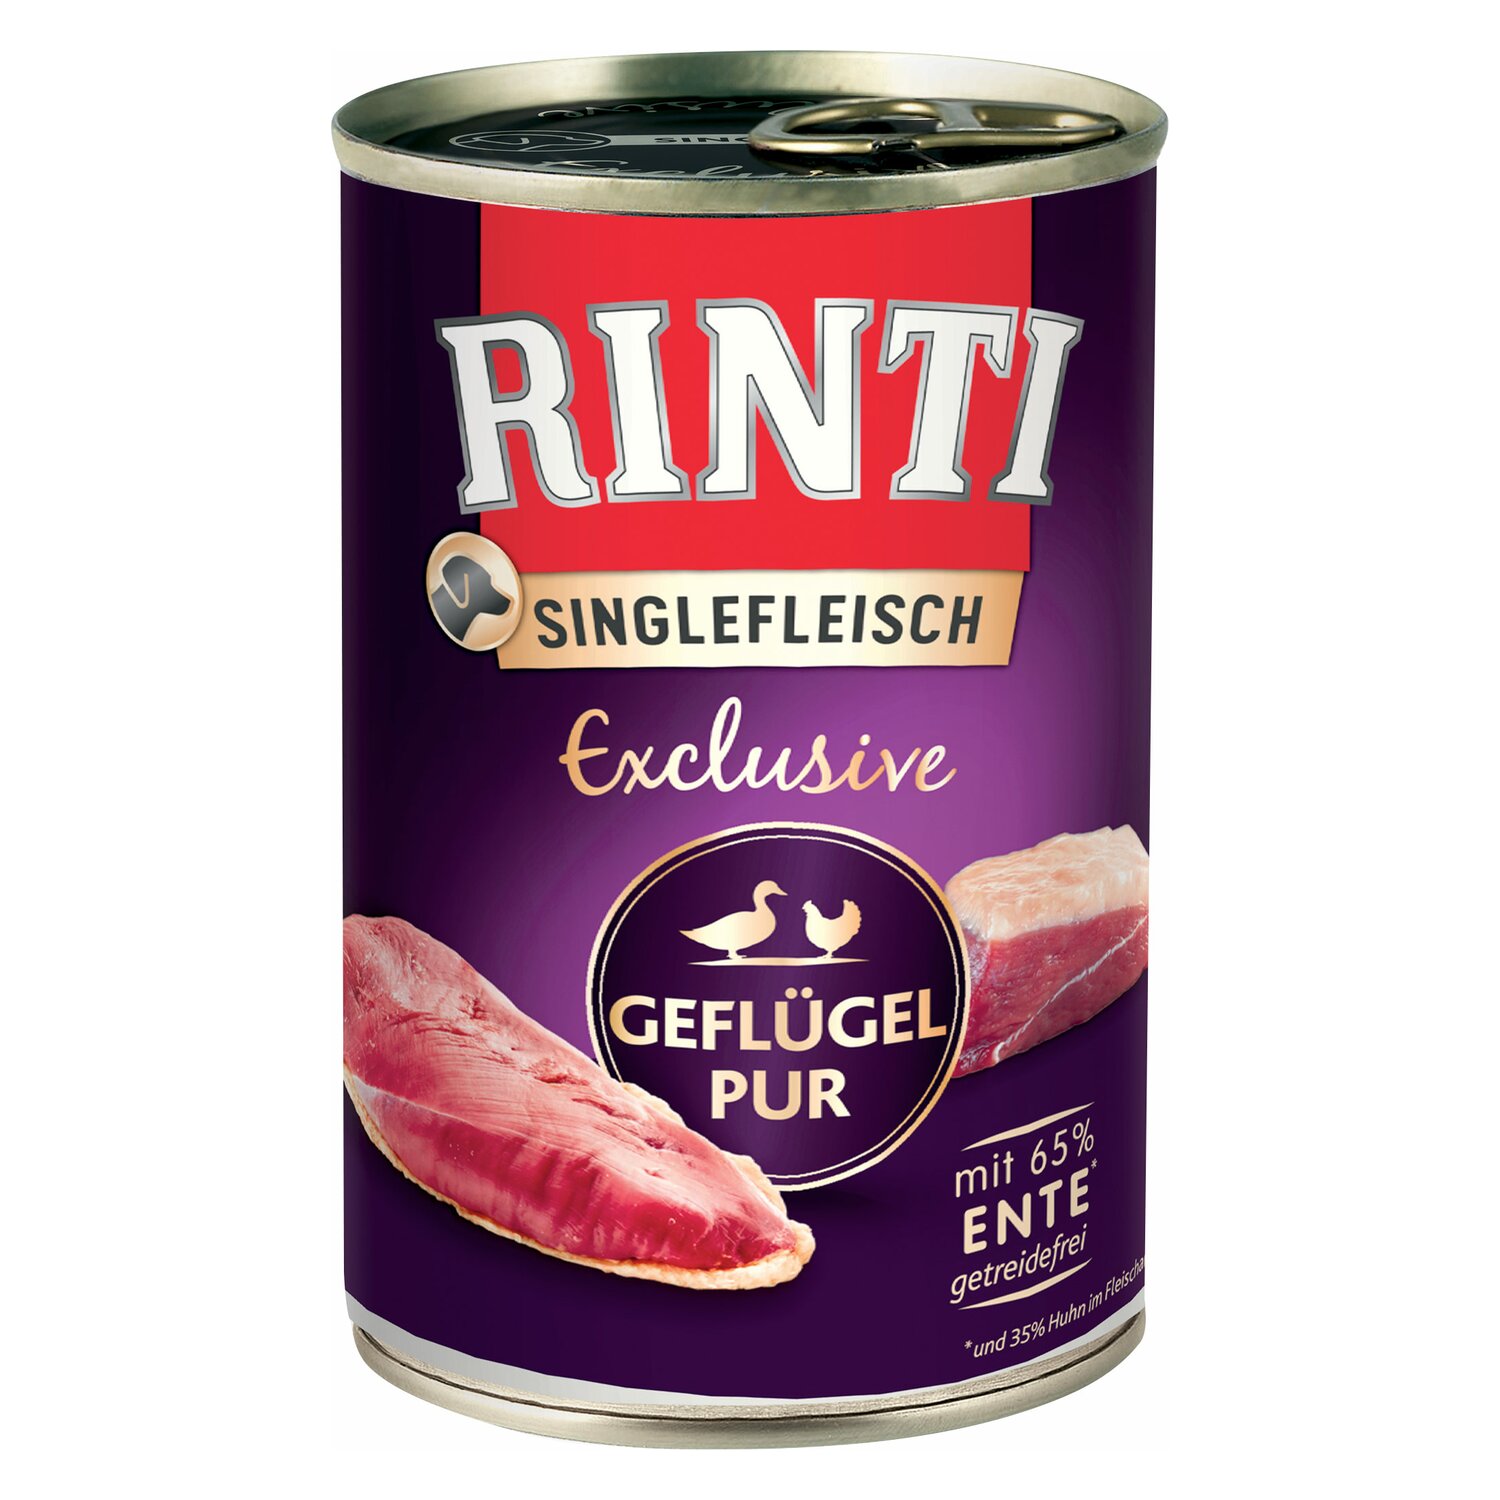 RINTI Nassfutter Singlefleisch Exclusive Pur 400g | Geflügel